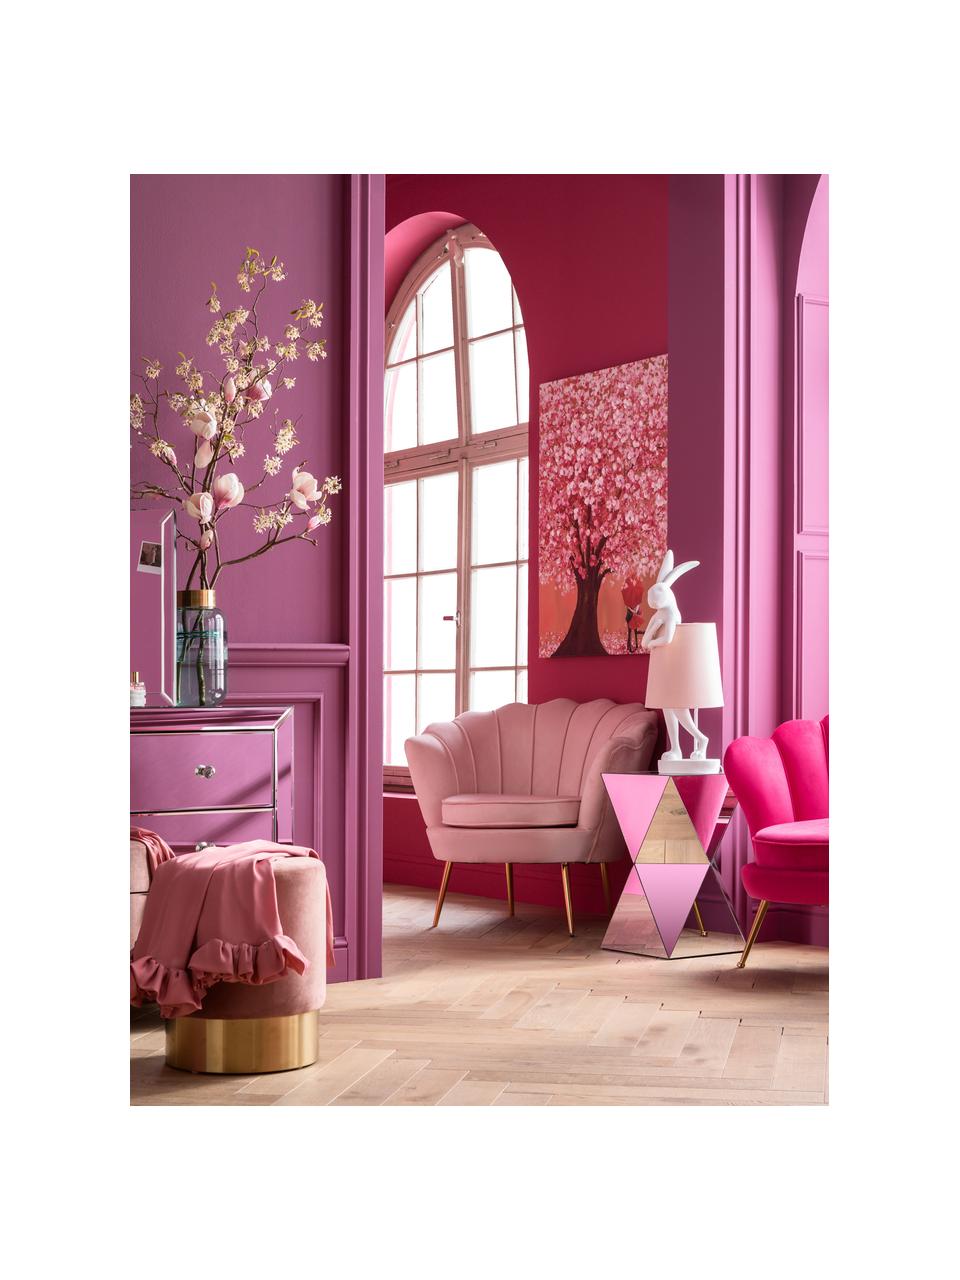 Grote design tafellamp Rabbit in roze, Lampenkap: linnen, Lampvoet: polyresin, Stang: gepoedercoat staal, Wit, roze, Ø 23 x H 68 cm